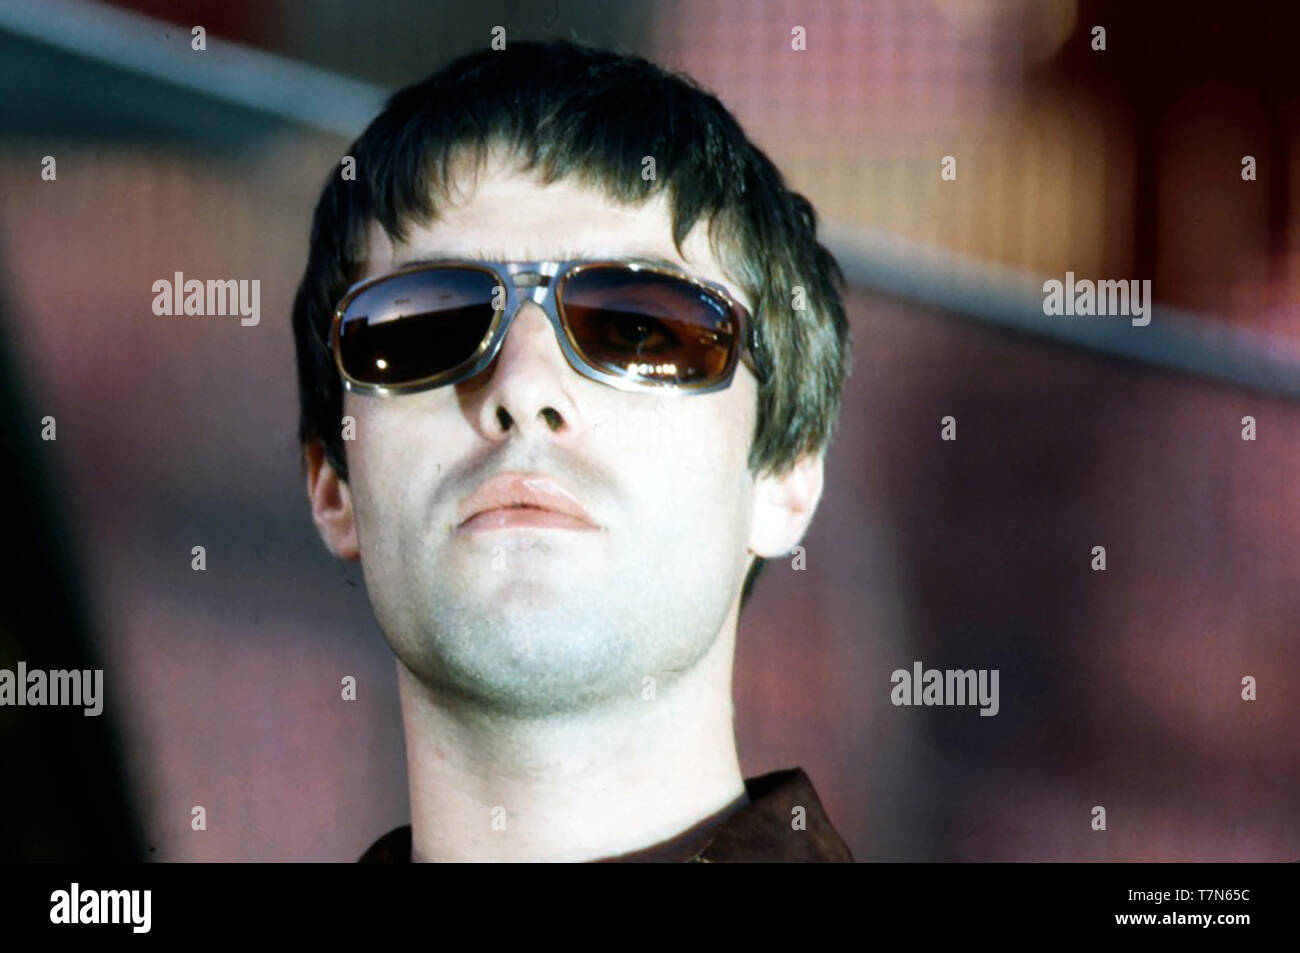 Groupe de rock britannique oasis avec Liam Gallagher en juin 1997 Banque D'Images